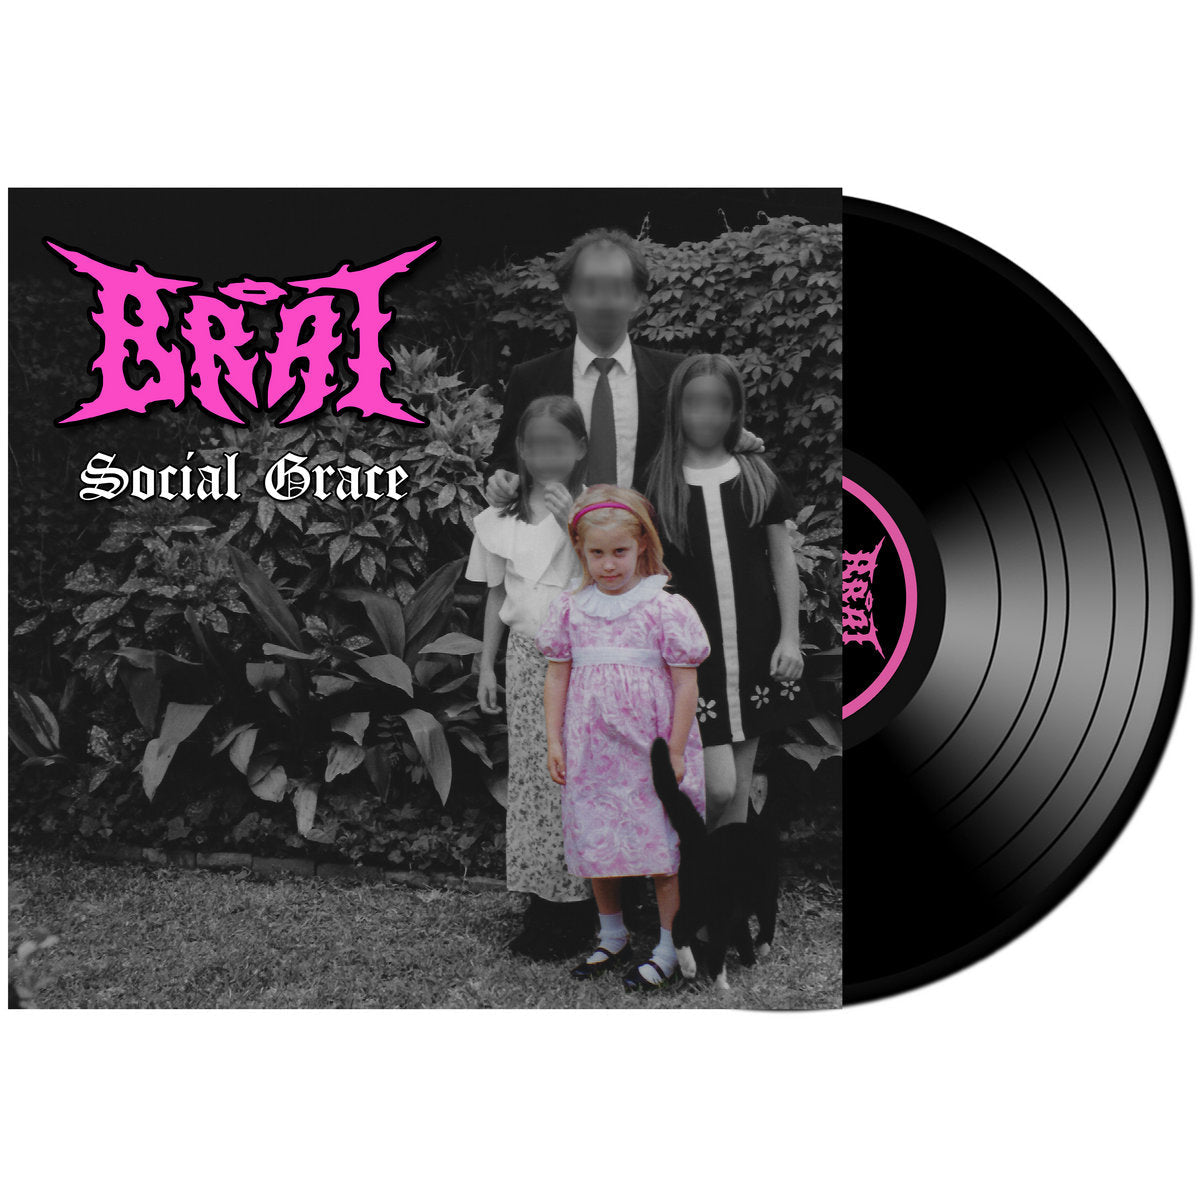 BRAT - Social Grace - LP - White & Pink Splatter Vinyl